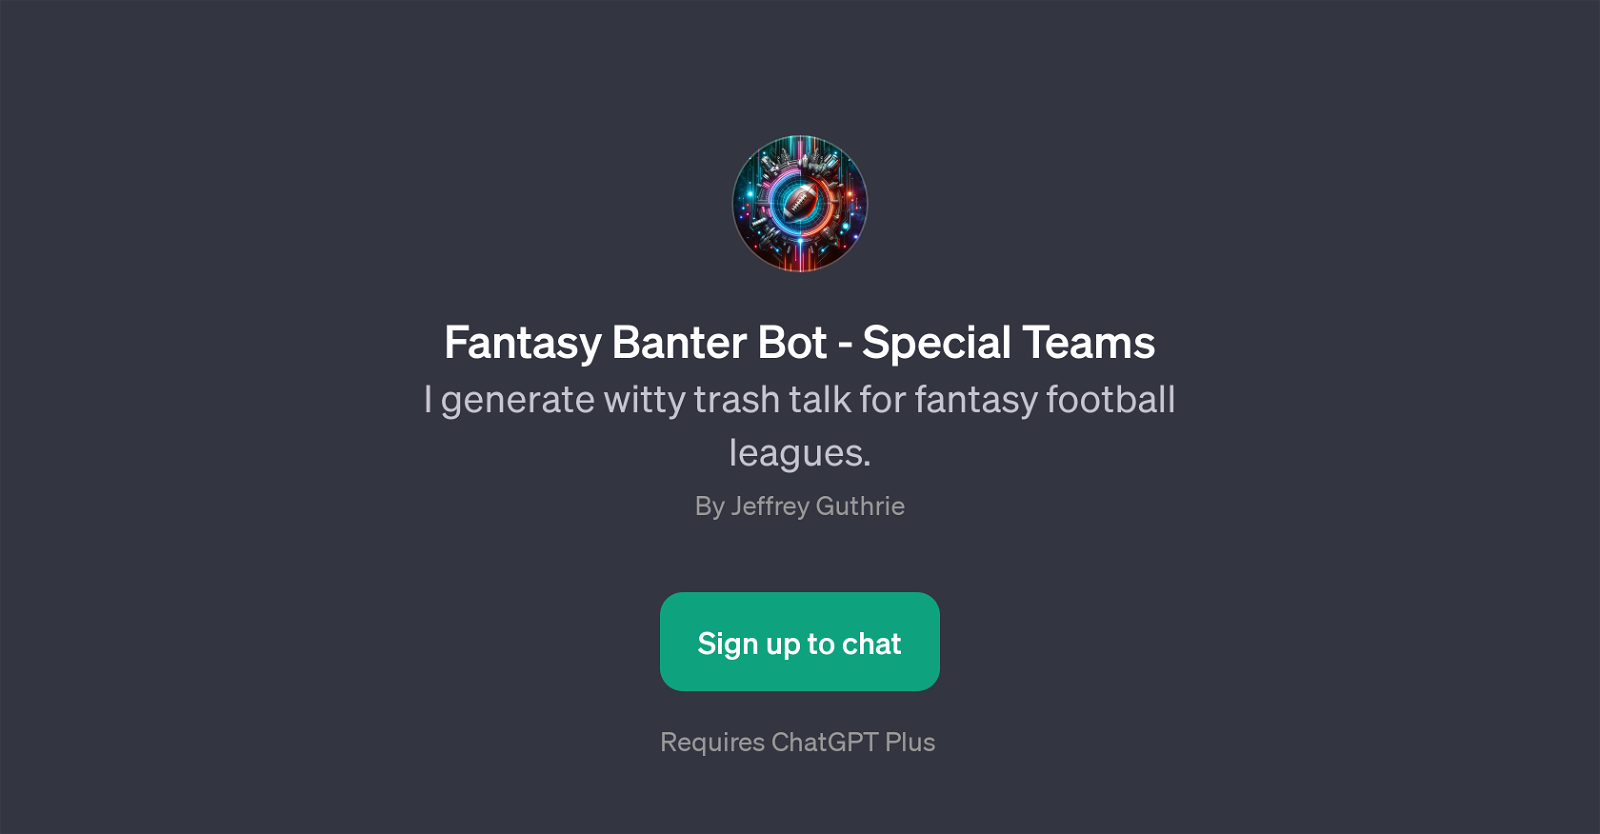 Fantasy Banter Bot - Special Teams website